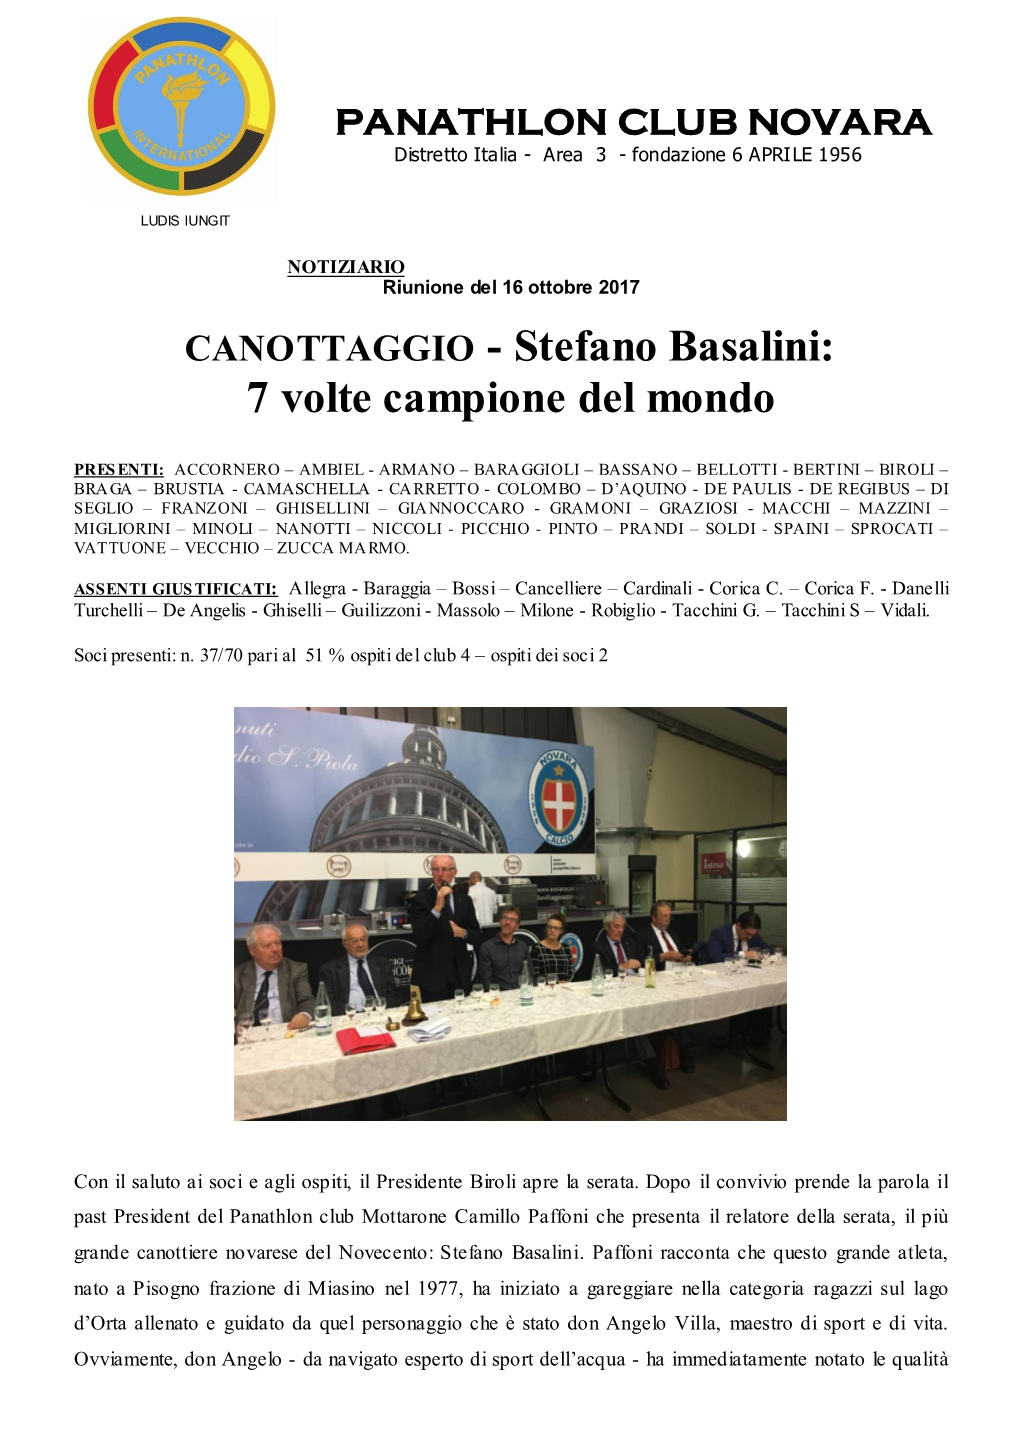 Stefano Basalini: 7 Volte Campione Del Mondo